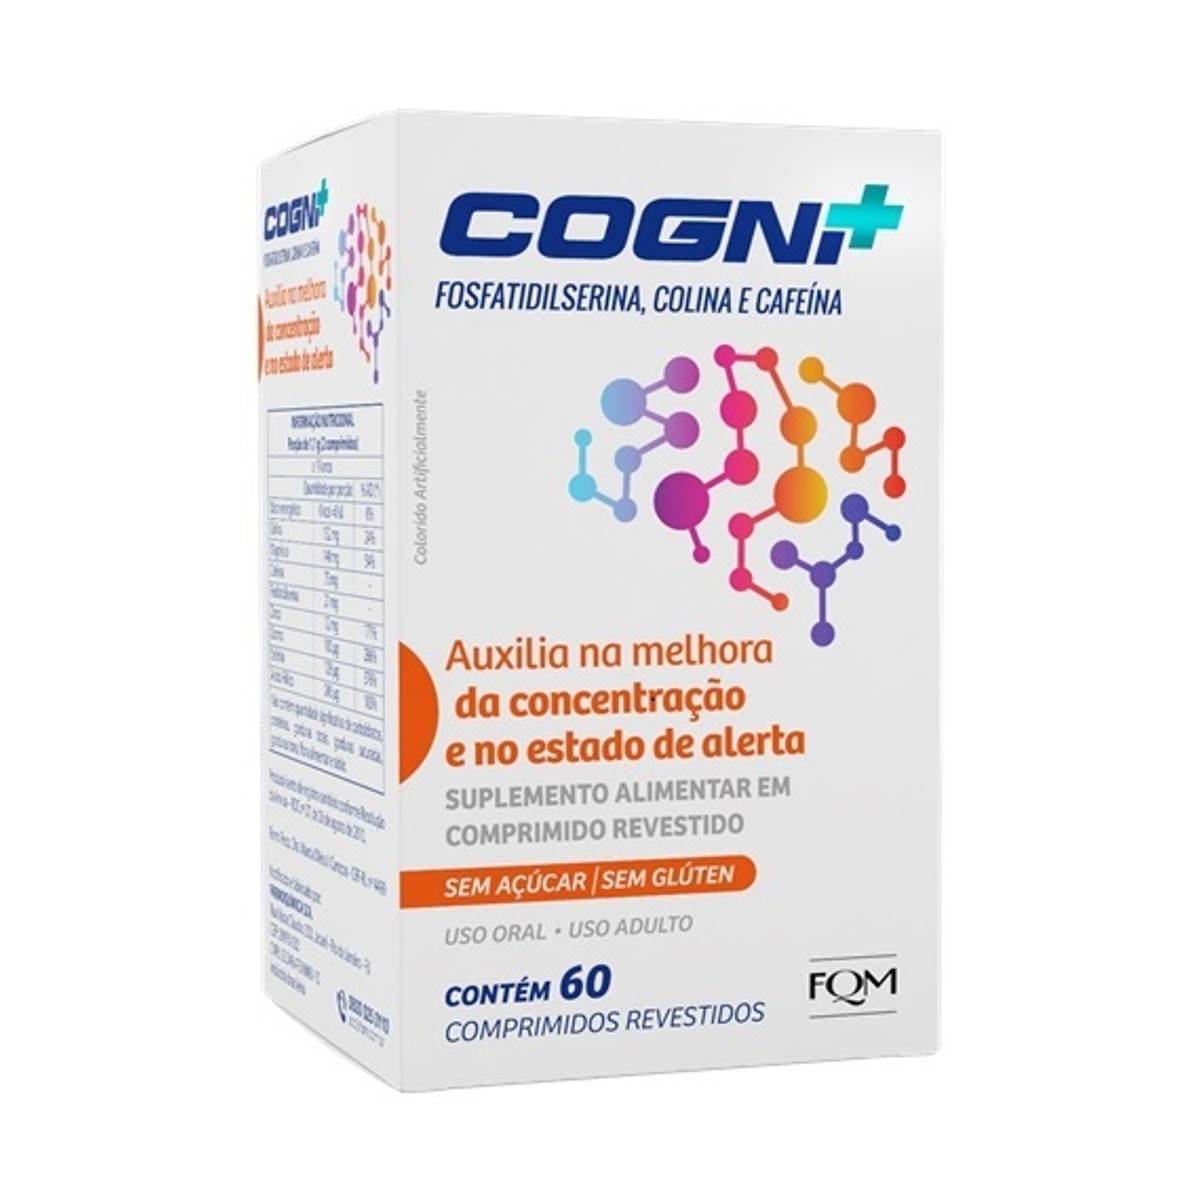 Cogni+ 60 Comprimidos Revestidos